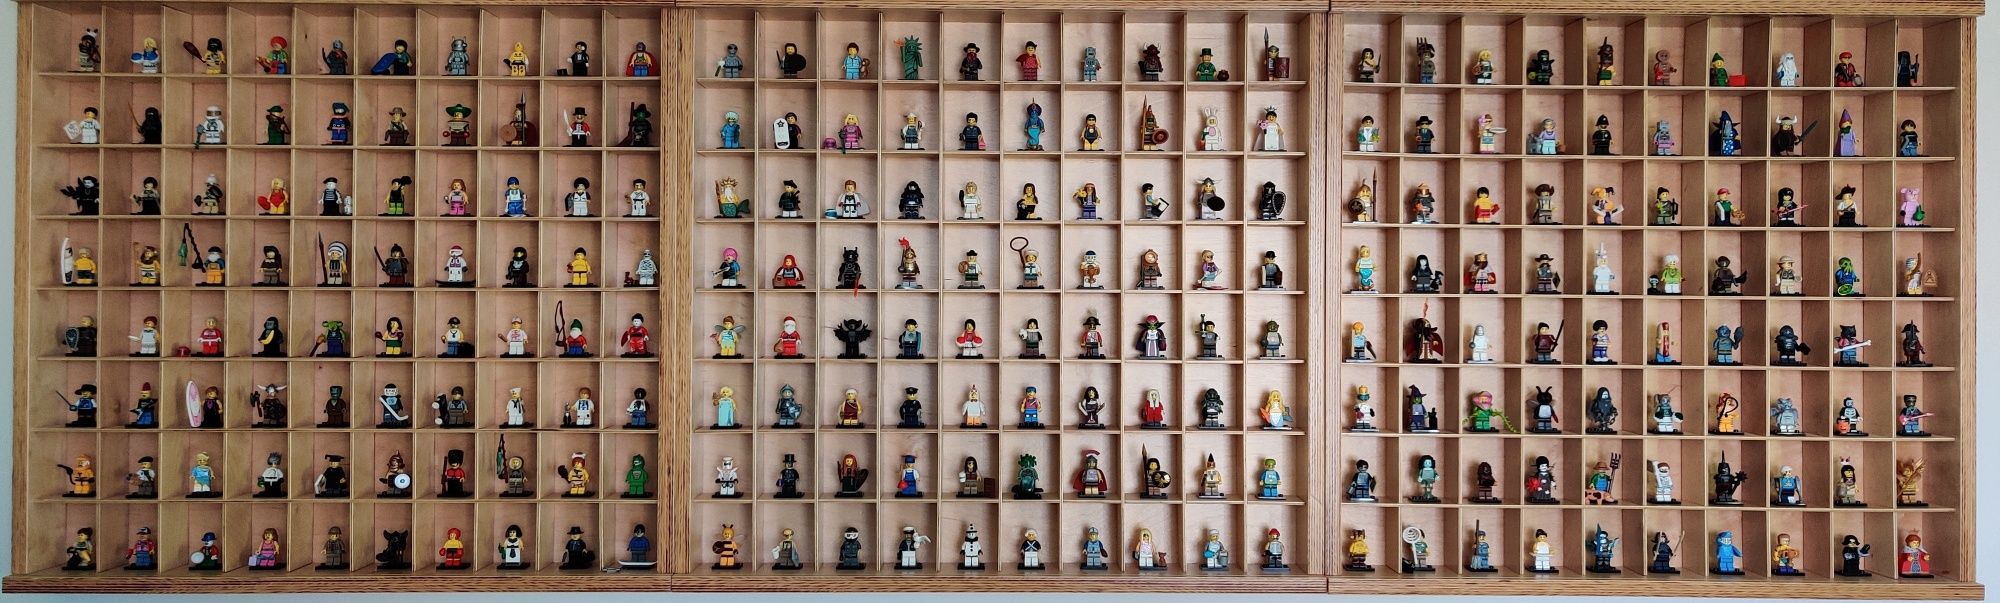 Gablota na Lego minifigures